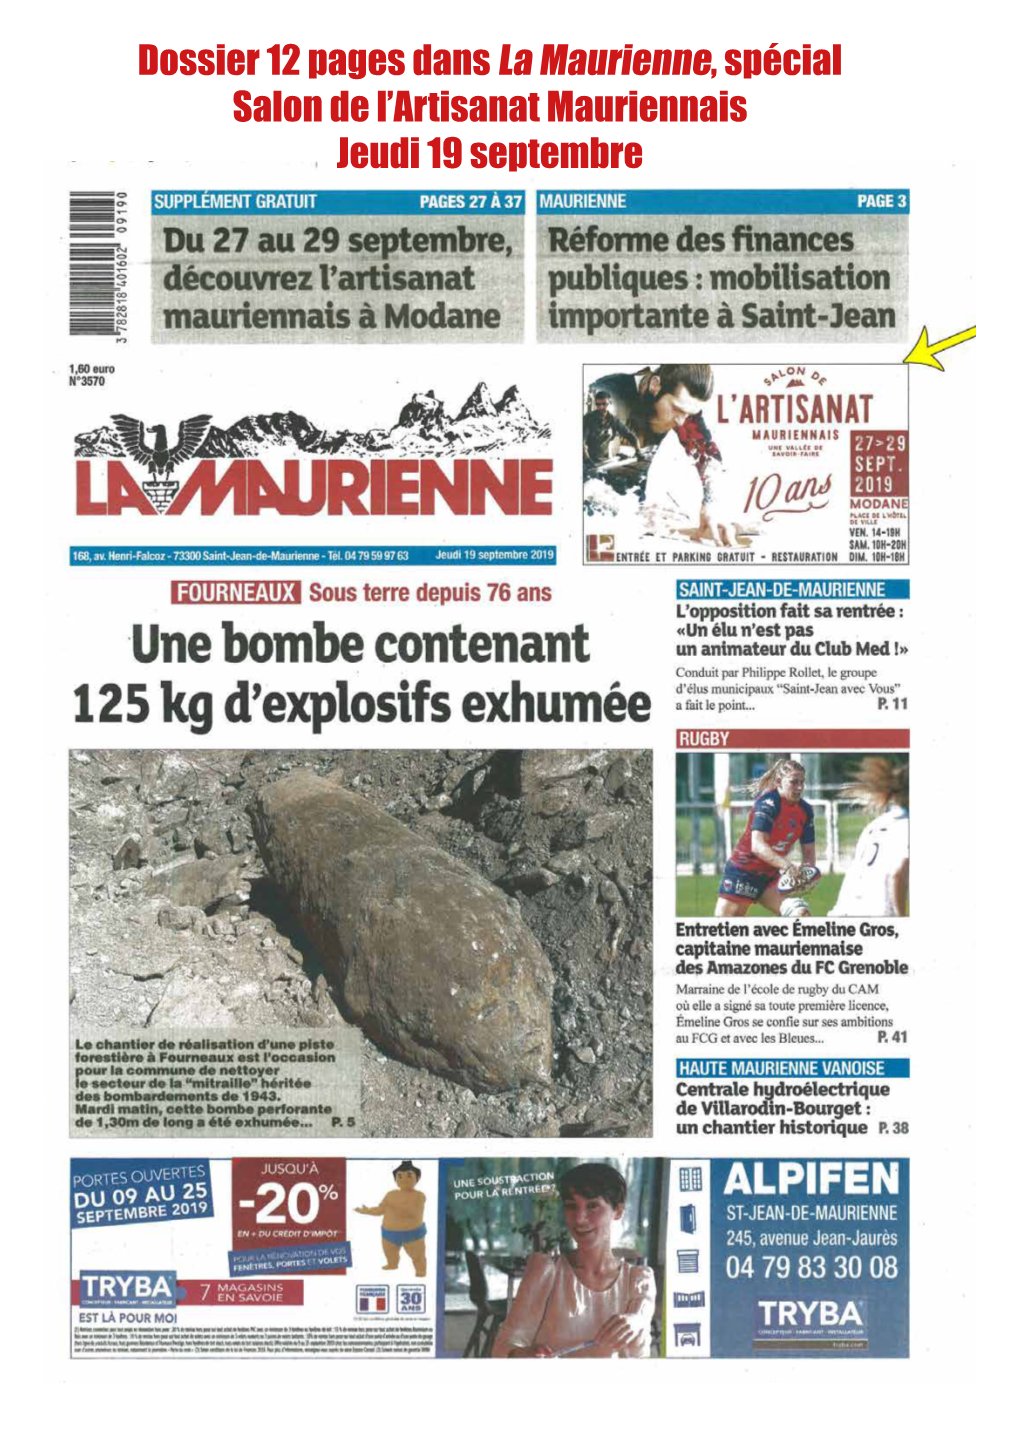 Dossier 12 Pages Dans La Maurienne, Spécial Salon De L